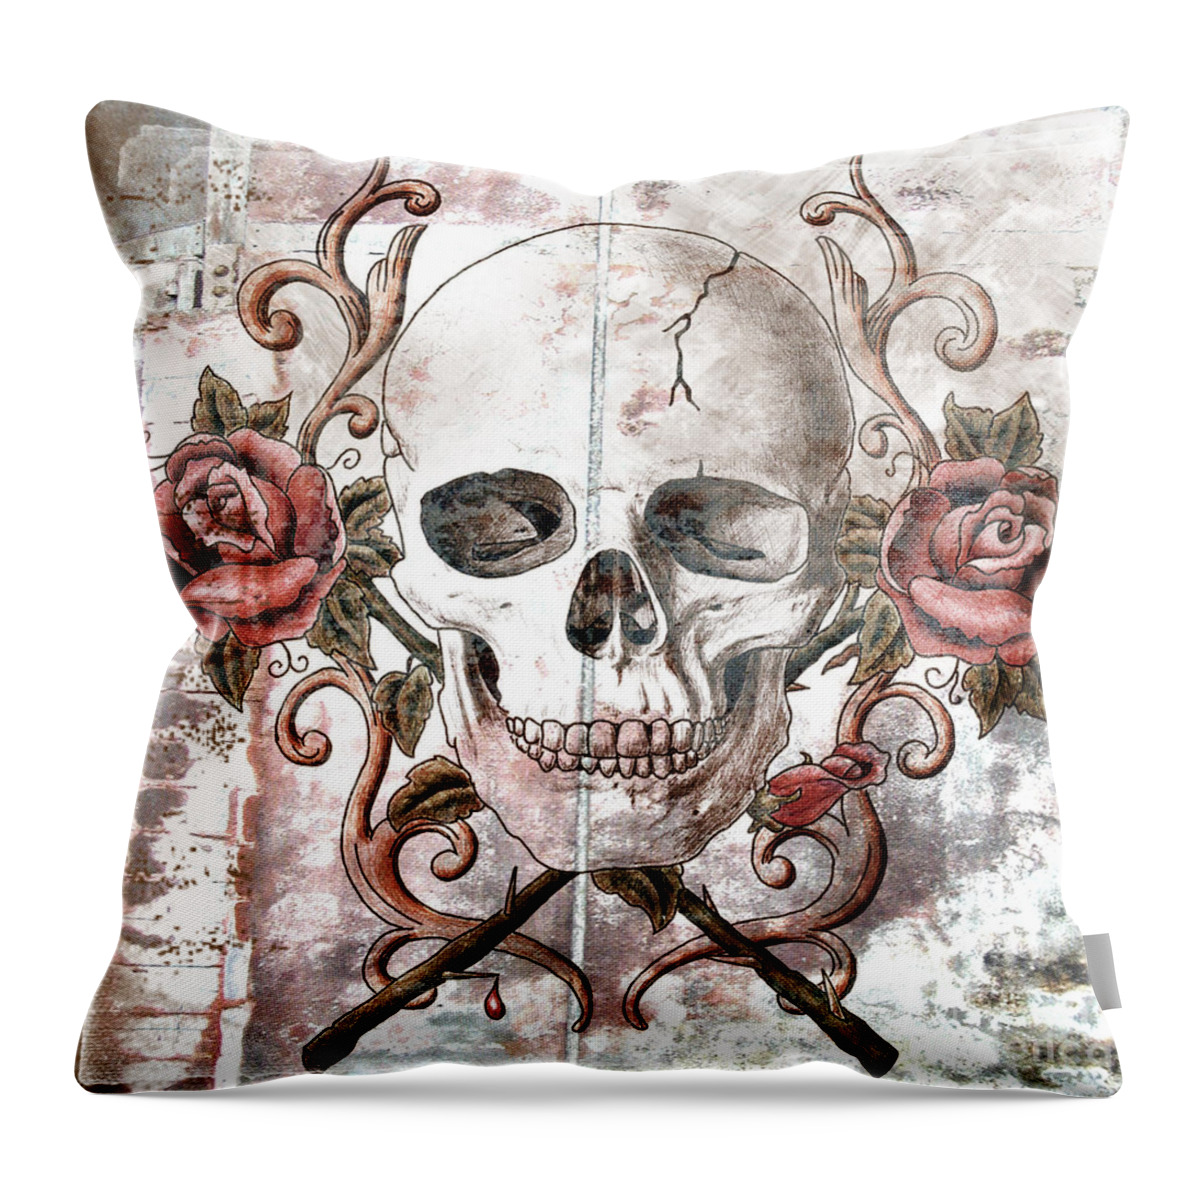 Skull Throw Pillow featuring the mixed media Agony by Maria Arango